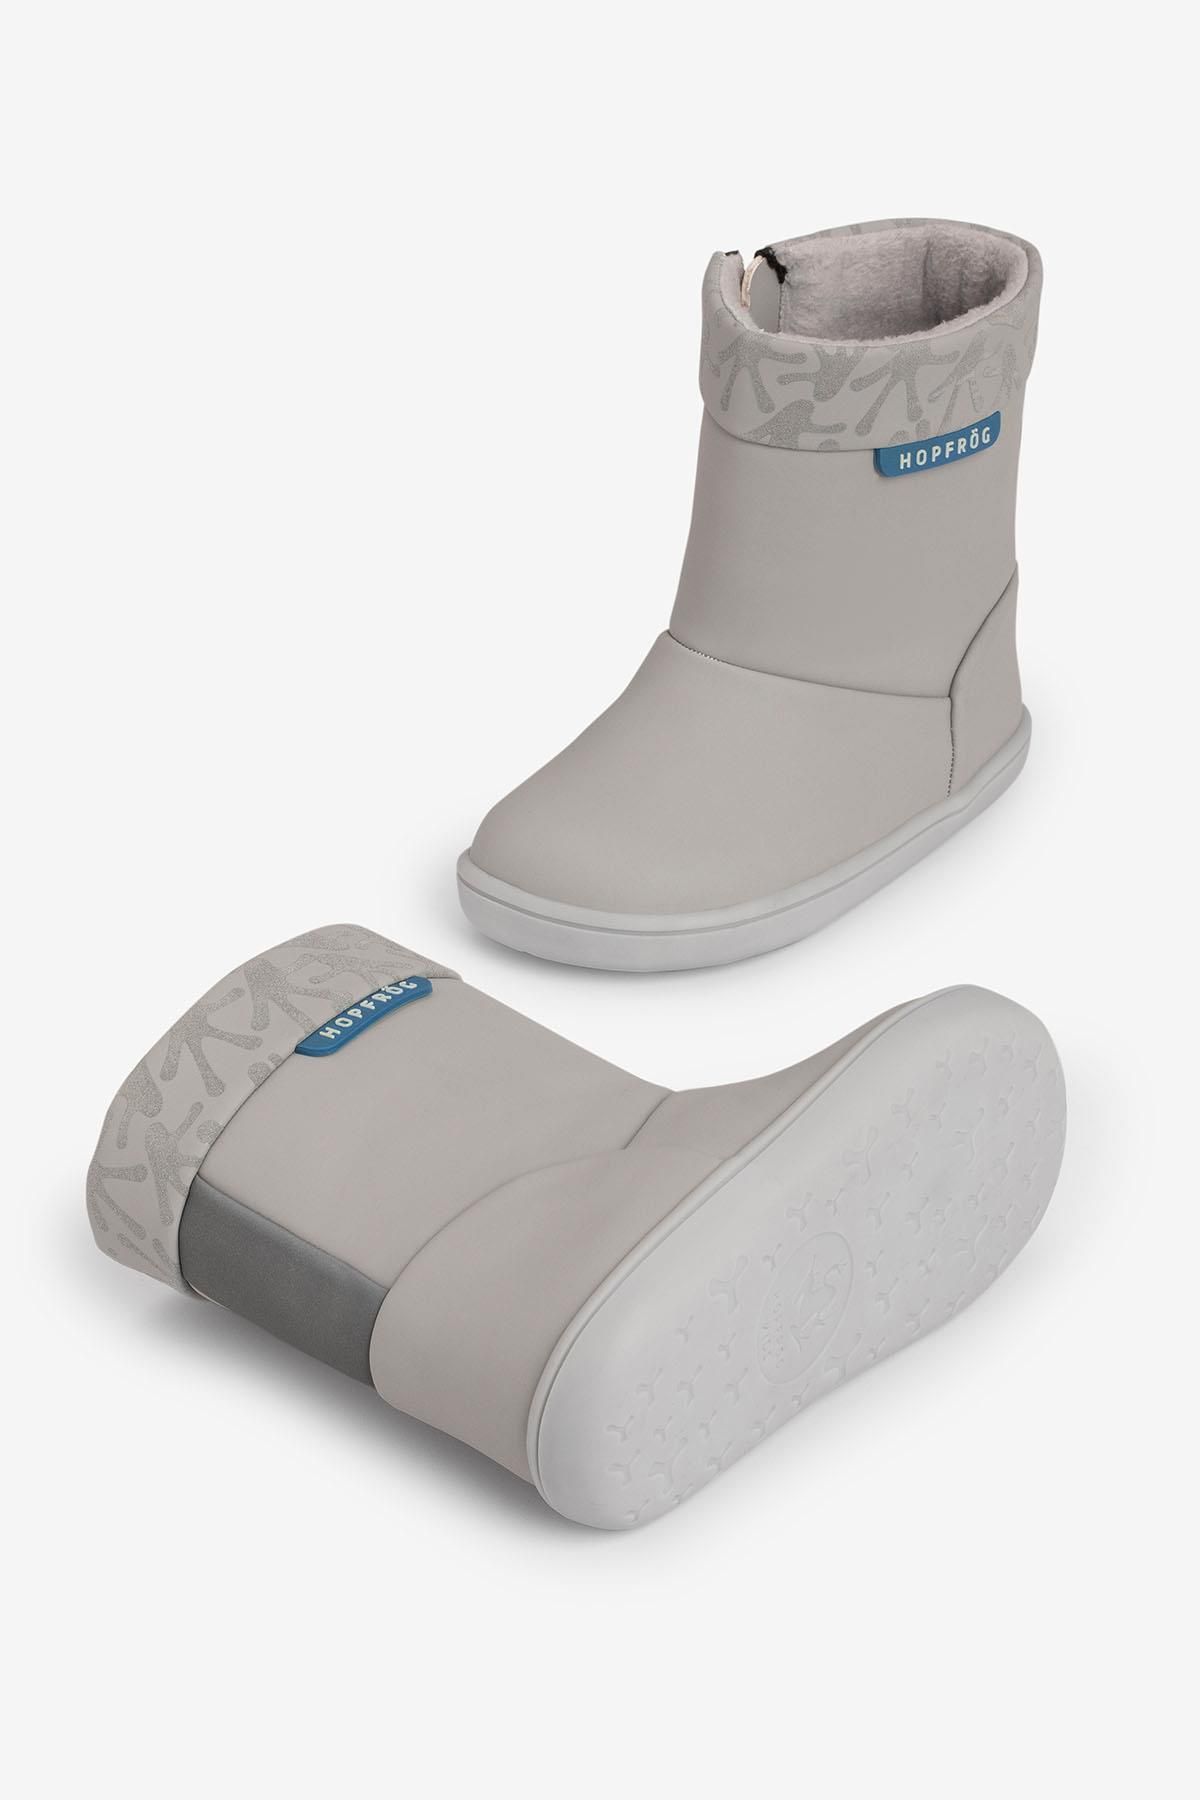 HOPFRÖG Smart Walker Cool Boots Süper Mat Havalı Gri Barefoot Çocuk Bot